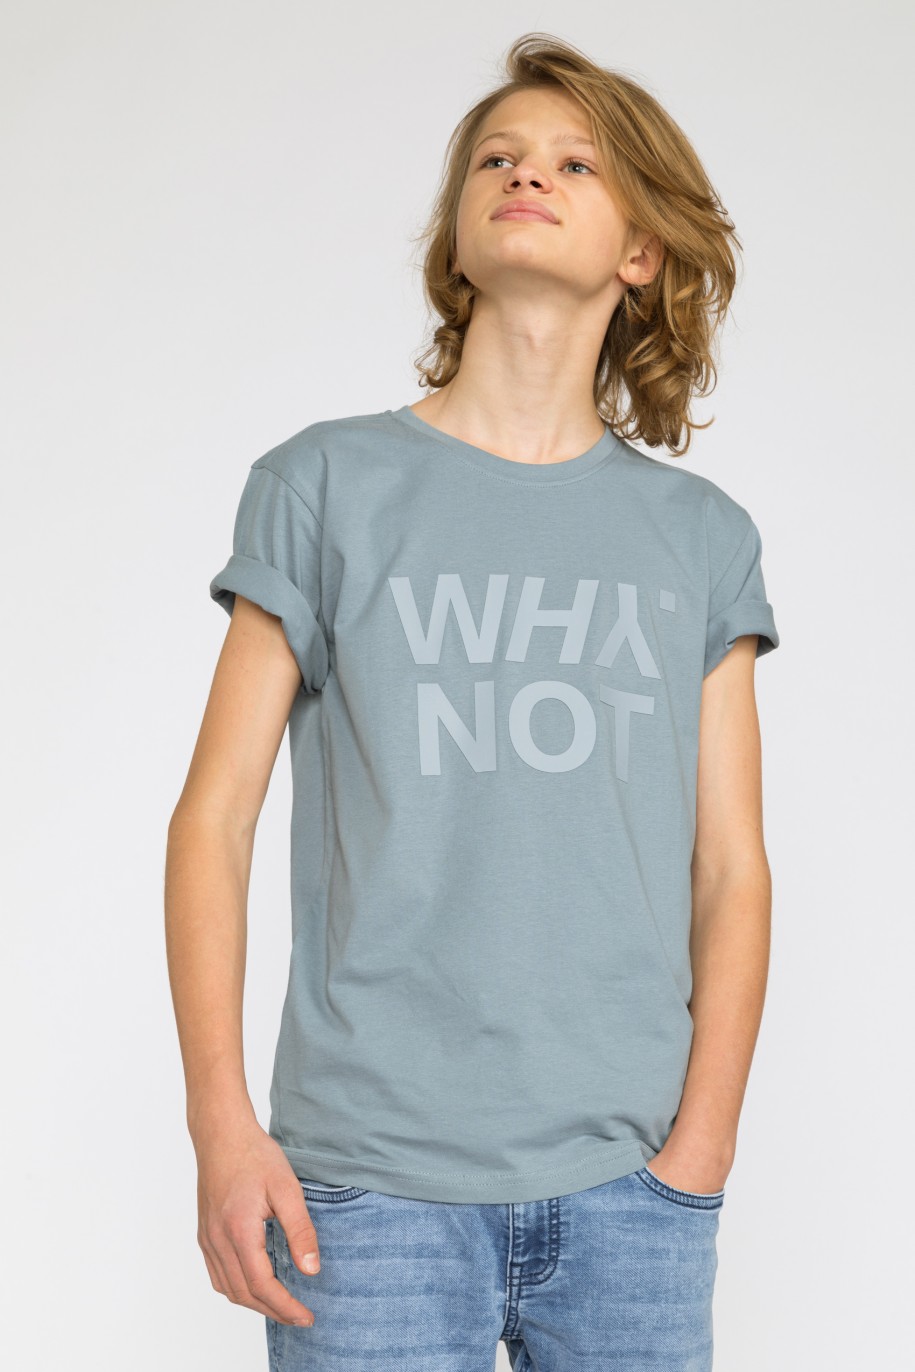 Szary t-shirt dla chłopaka z matowym nadrukiem WHY NOT - 32181